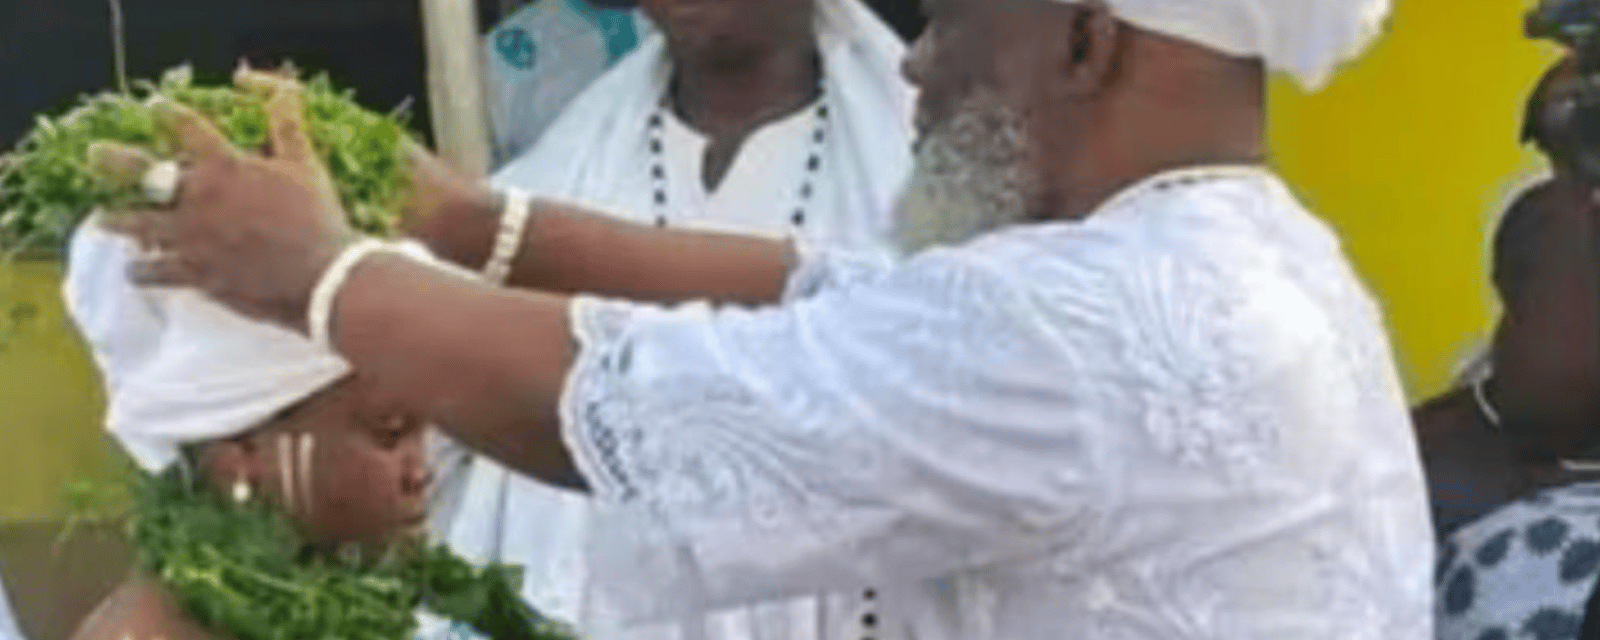 Un prêtre de 63 ans se marie avec une adolescente de 13 ans suscitant ainsi la consternation